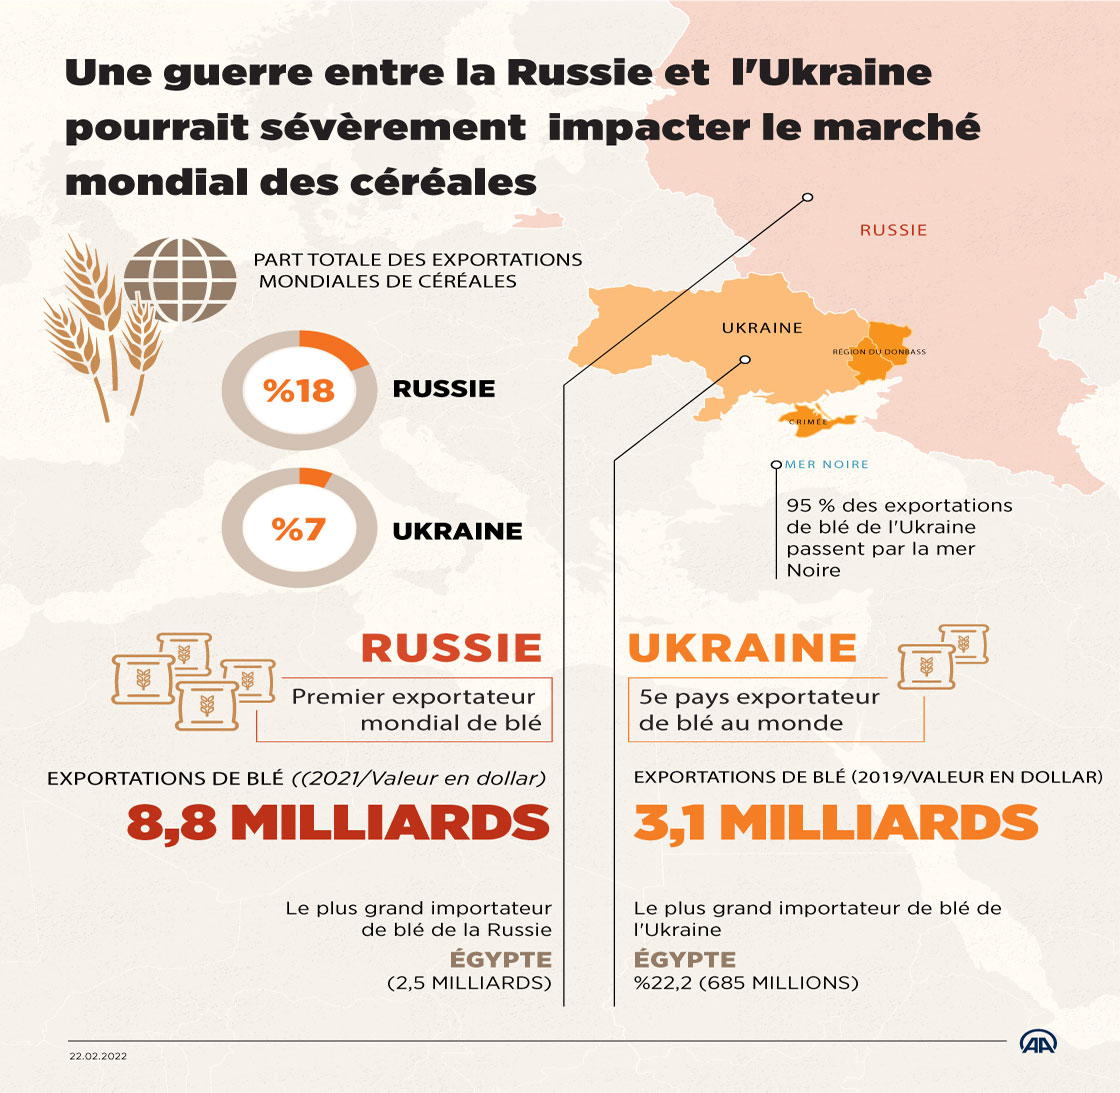 Une guerre entre la Russie et l'Ukraine pourrait sévèrement impacter le marché mondial des céréales